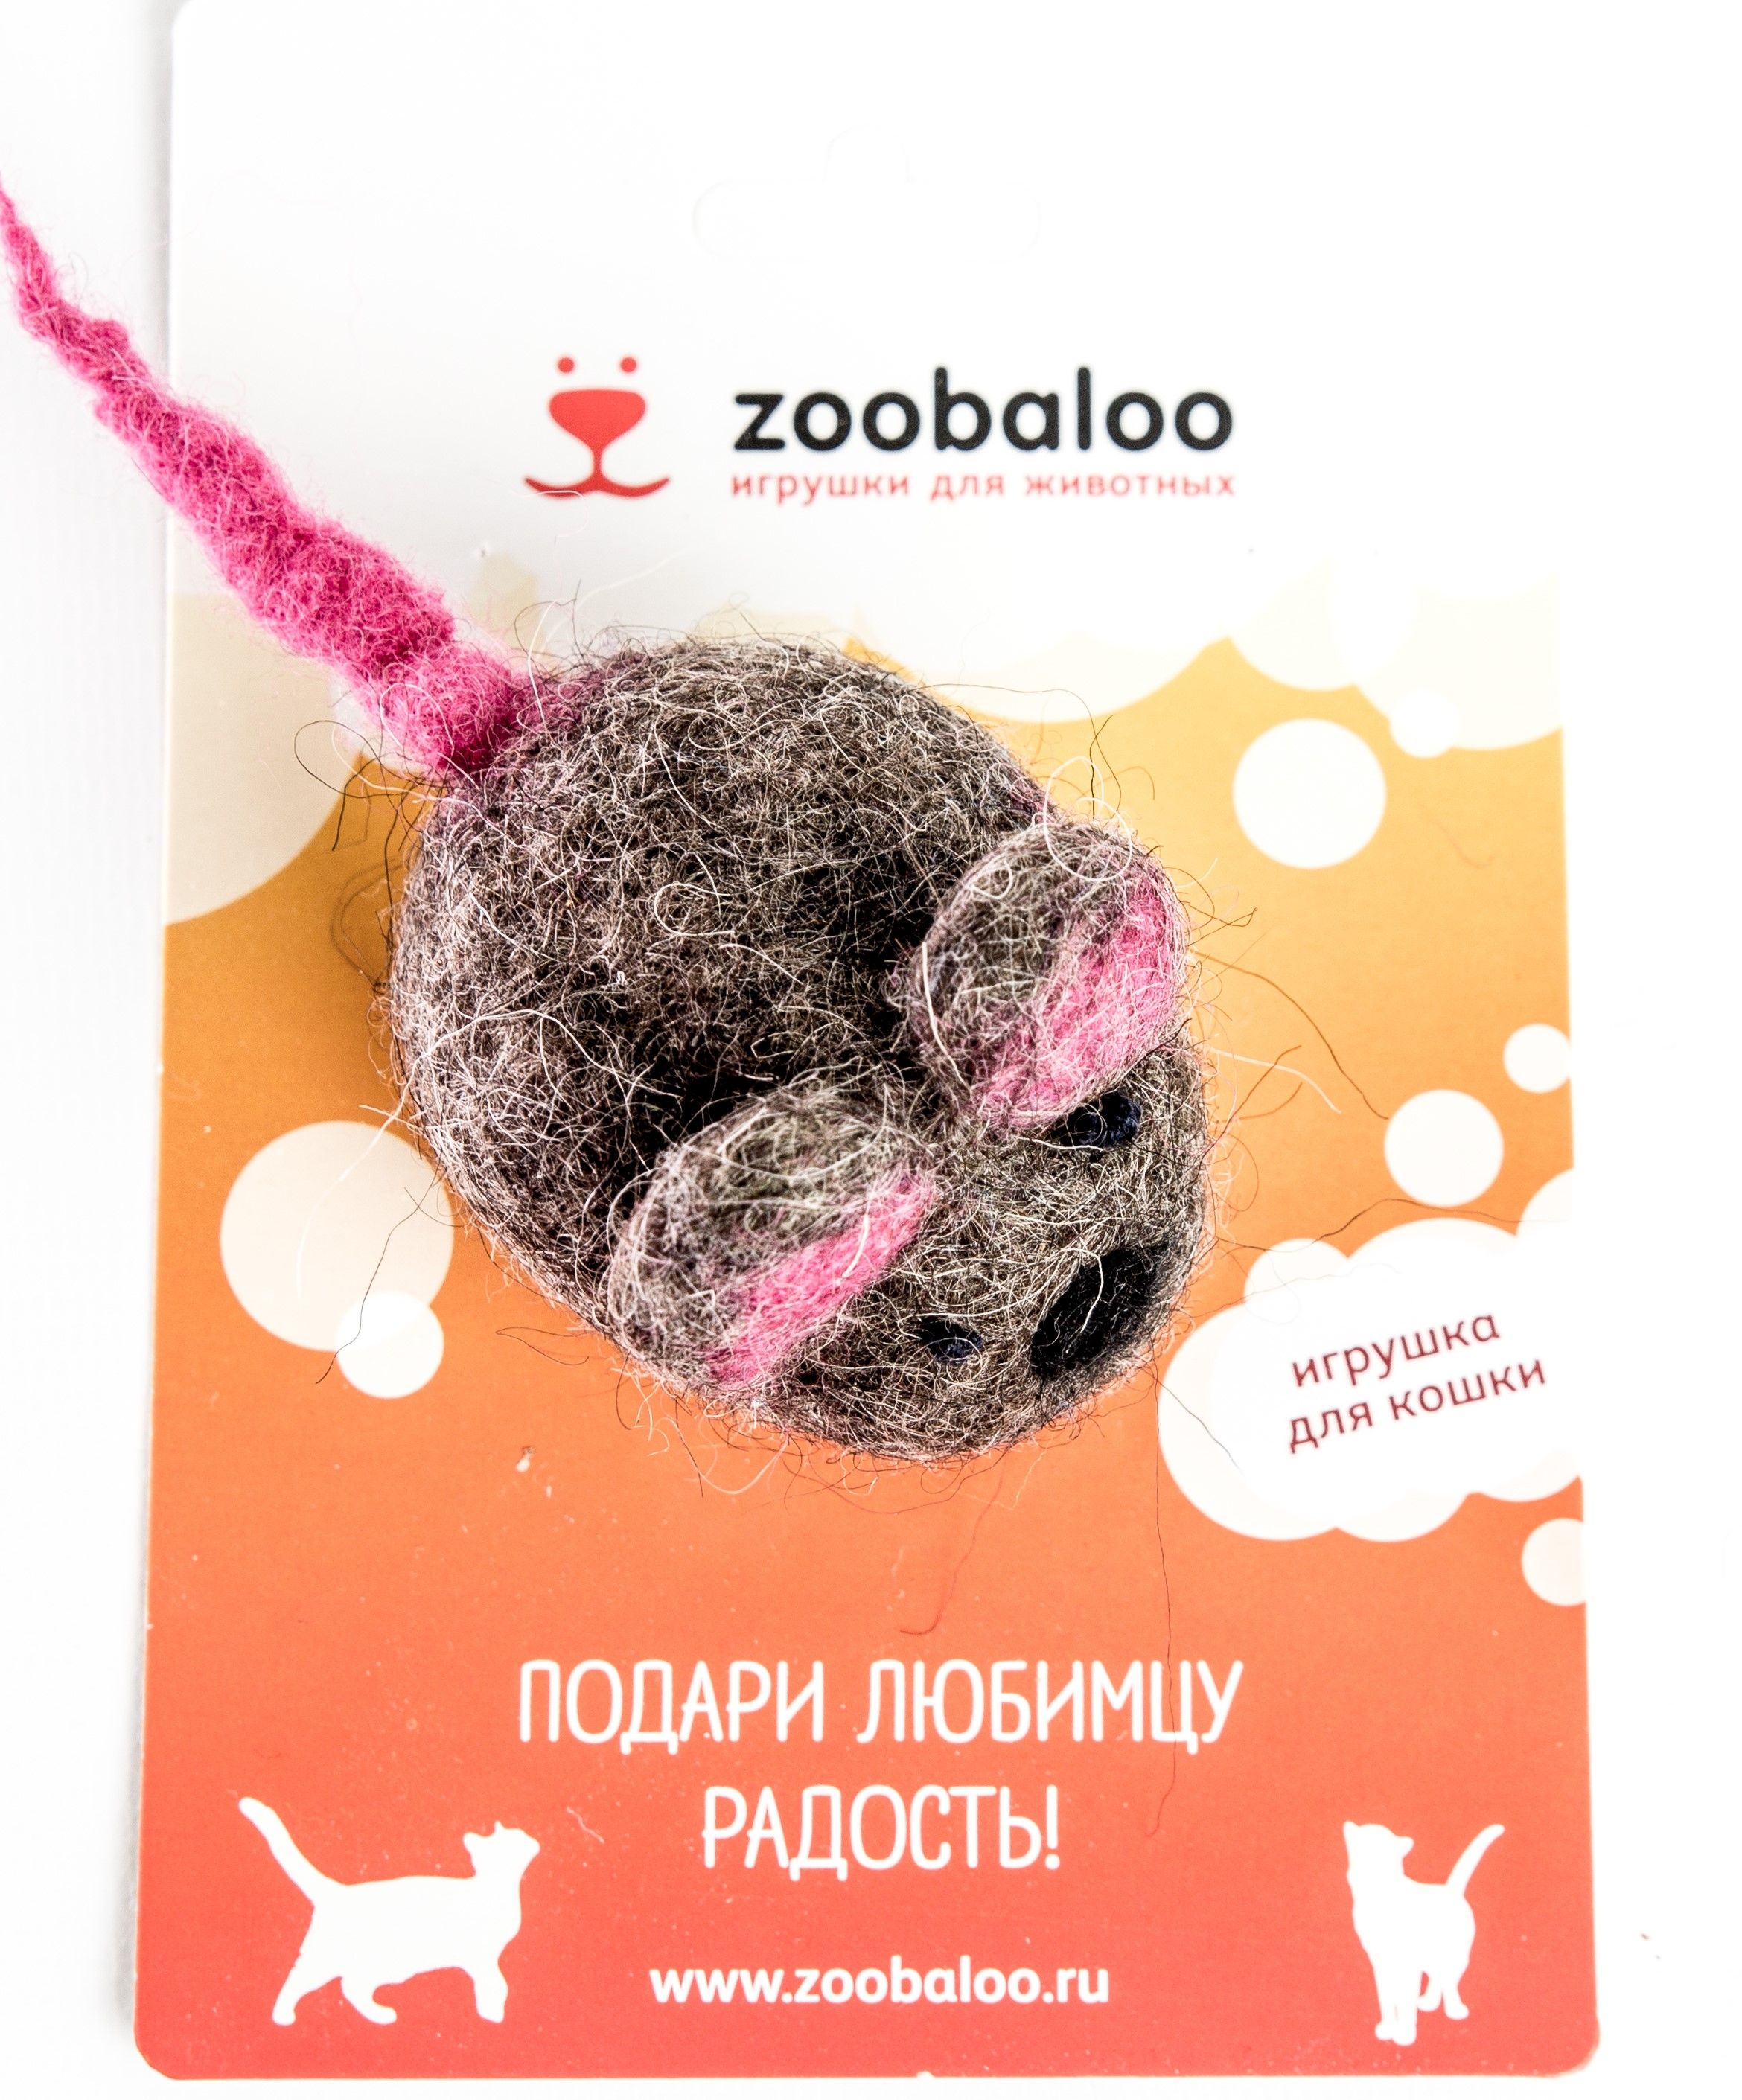    Zoobaloo 347, 